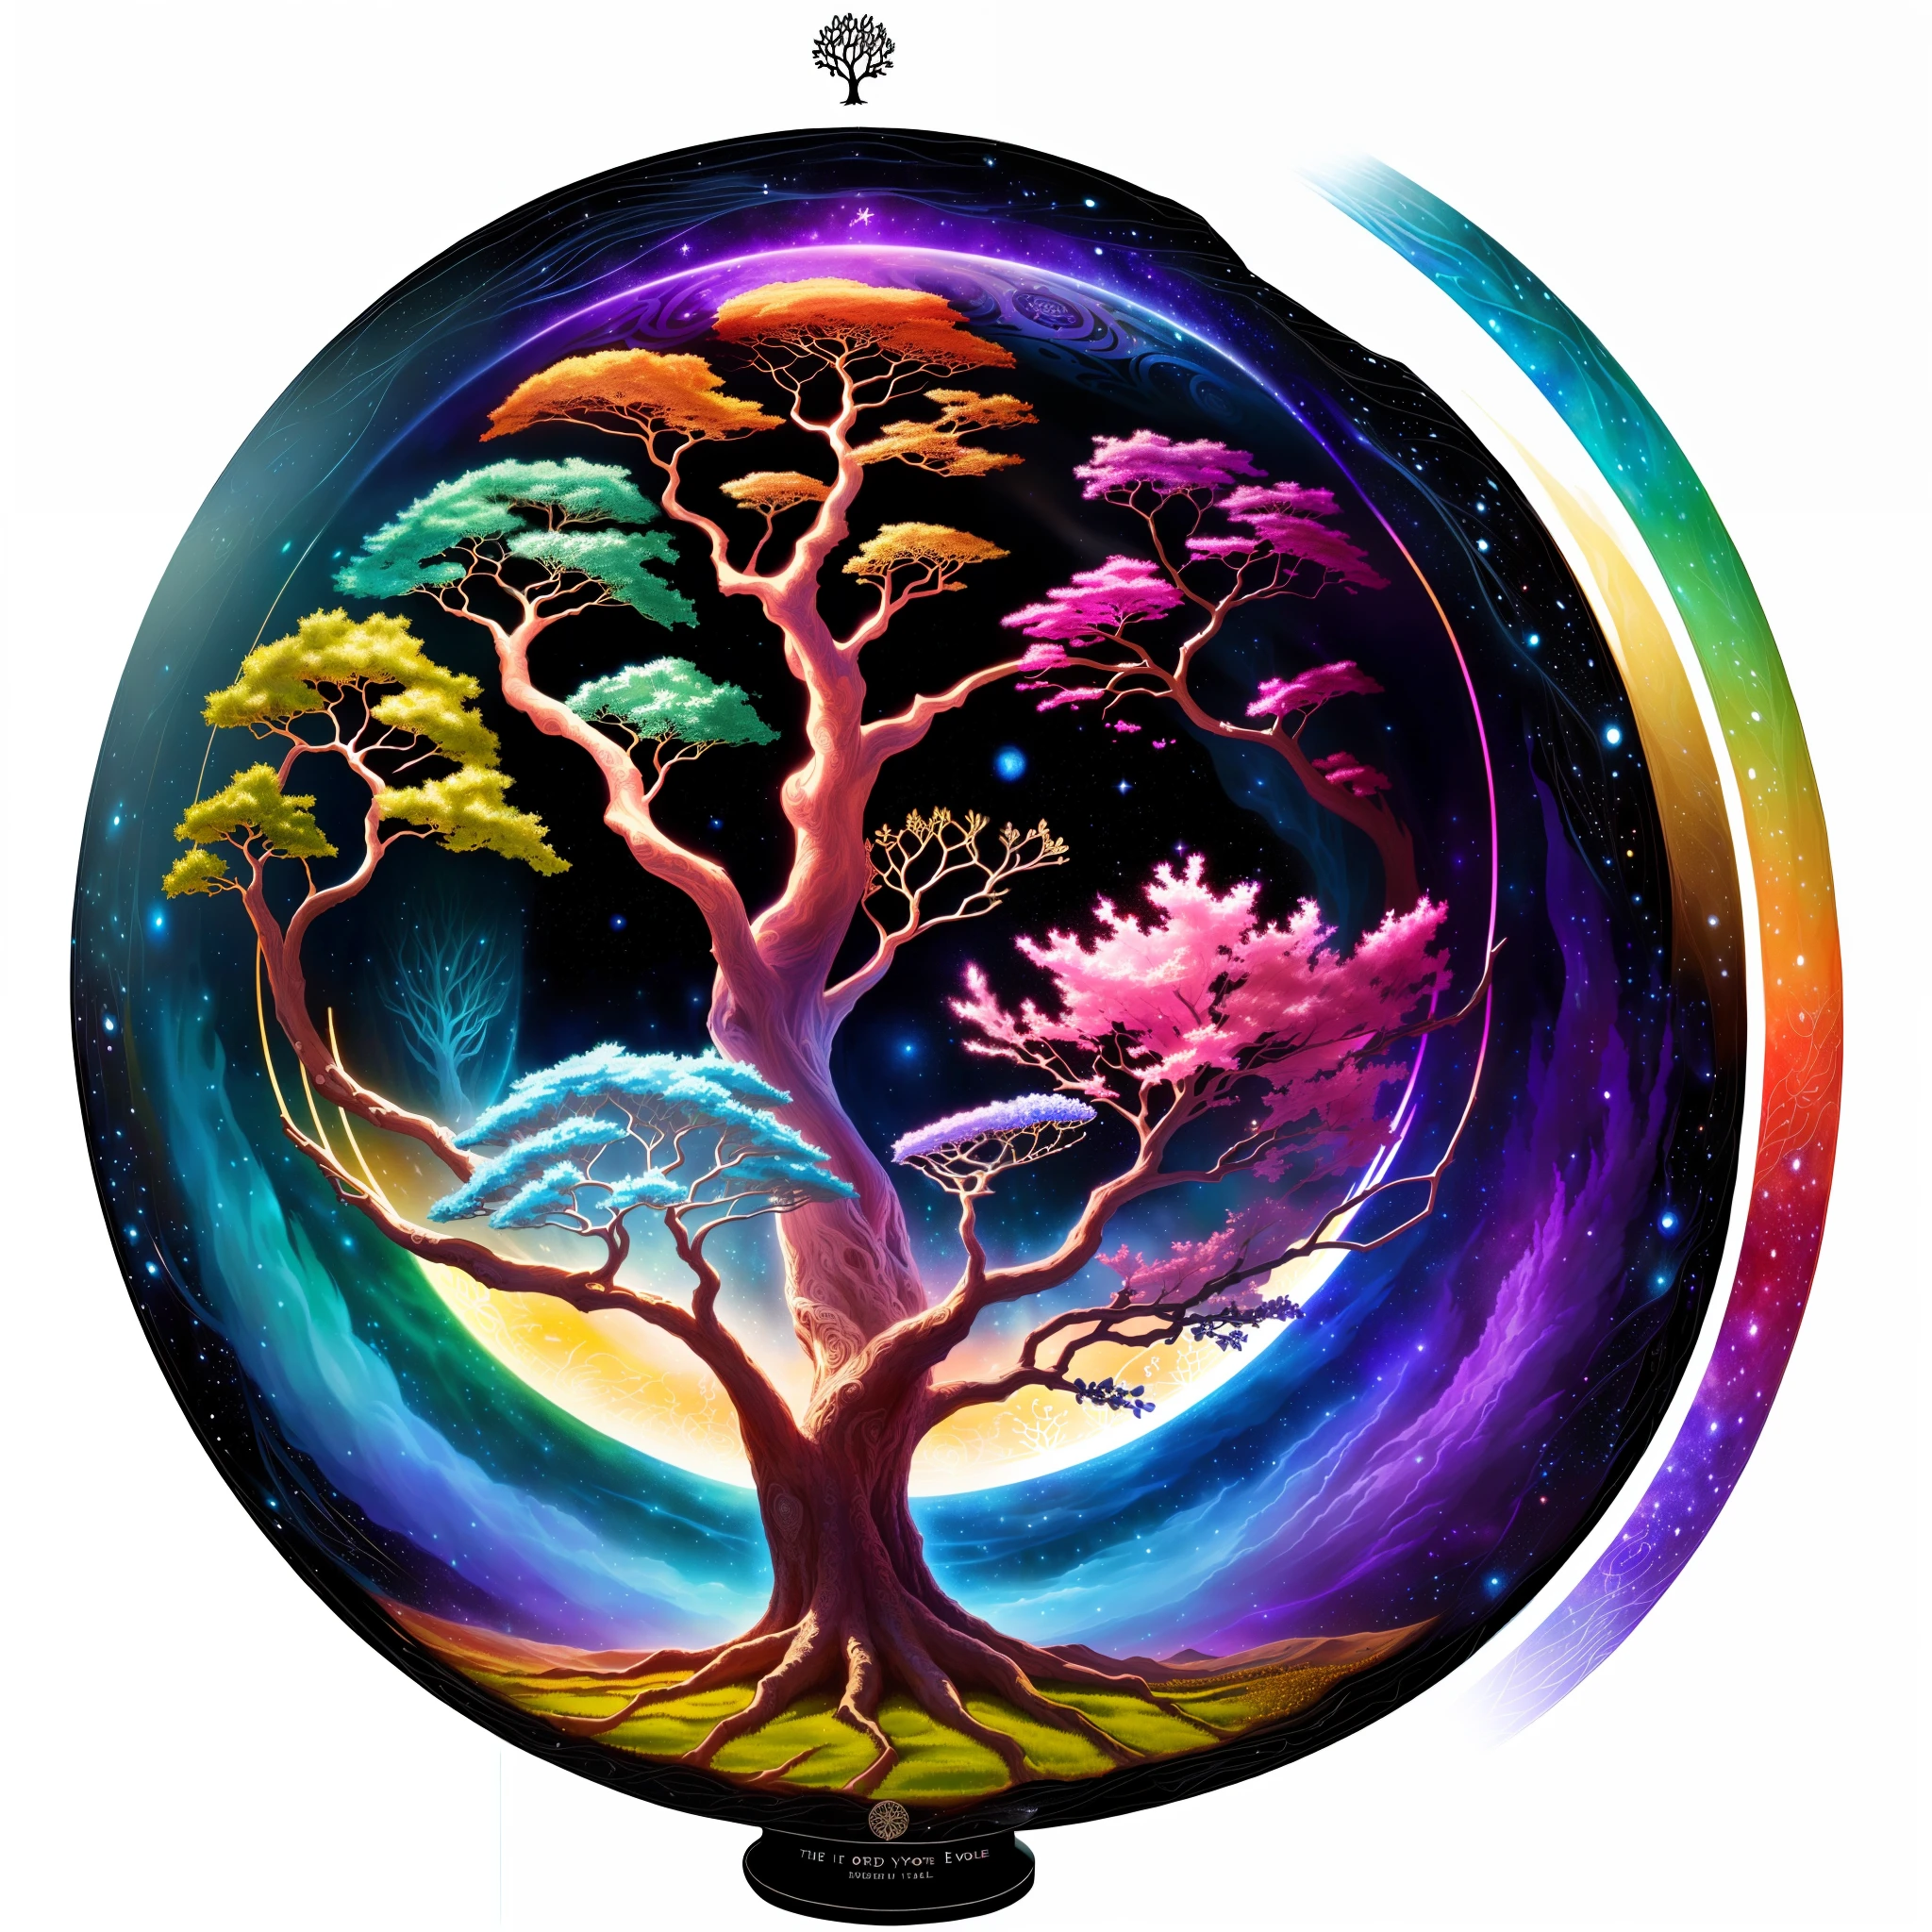 有一张树的图片，上面有许多不同颜色, 生命之树 seed of doubt, 世界树, 生命之树 inside the ball, 生命之树, the 世界树, cosmic 生命之树, the 生命之树, 尤格德拉希尔, 一幅美丽的艺术插图, 艺术插图, 幻想树, 神奇的树, 精美细致的插图, 生命之树 brains